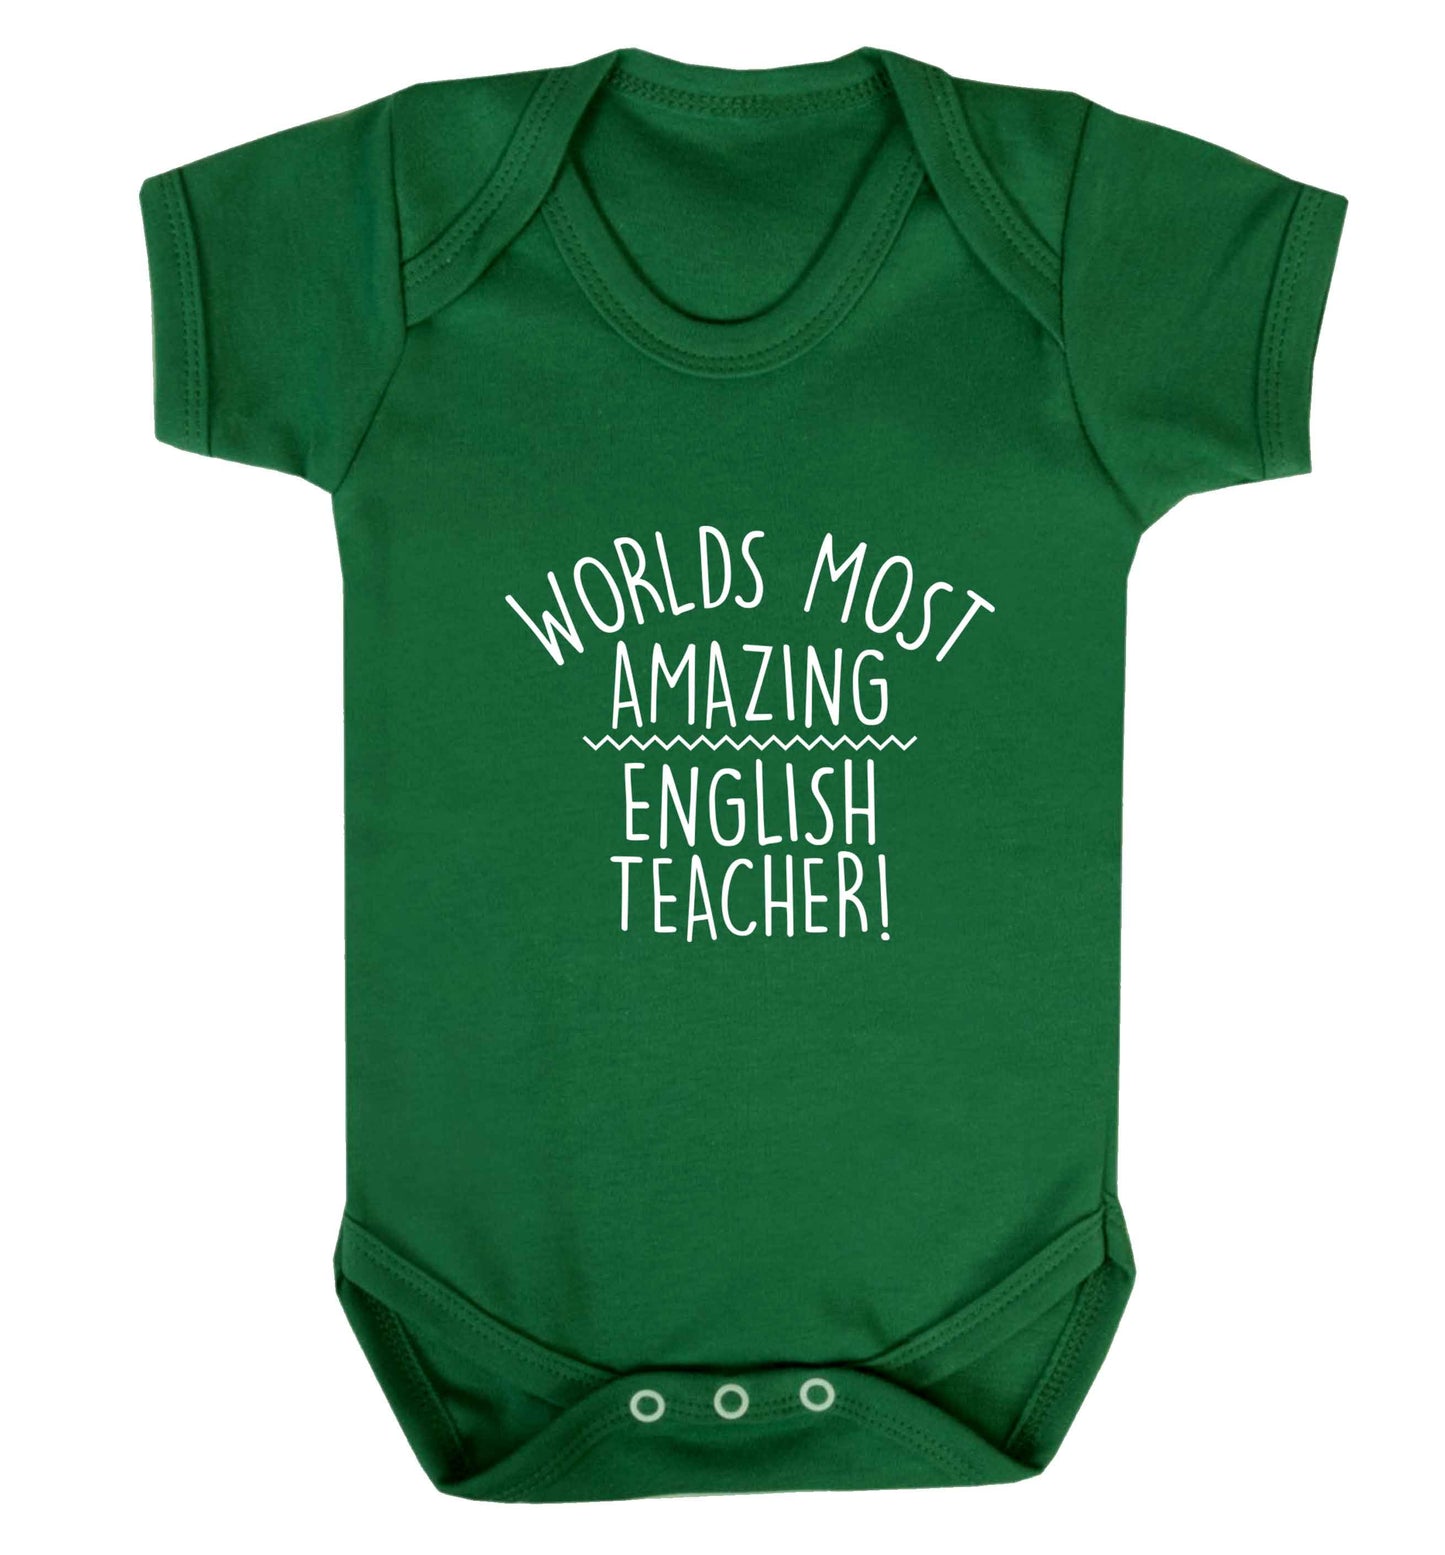 Worlds most amazing English teacher baby vest green 18-24 months